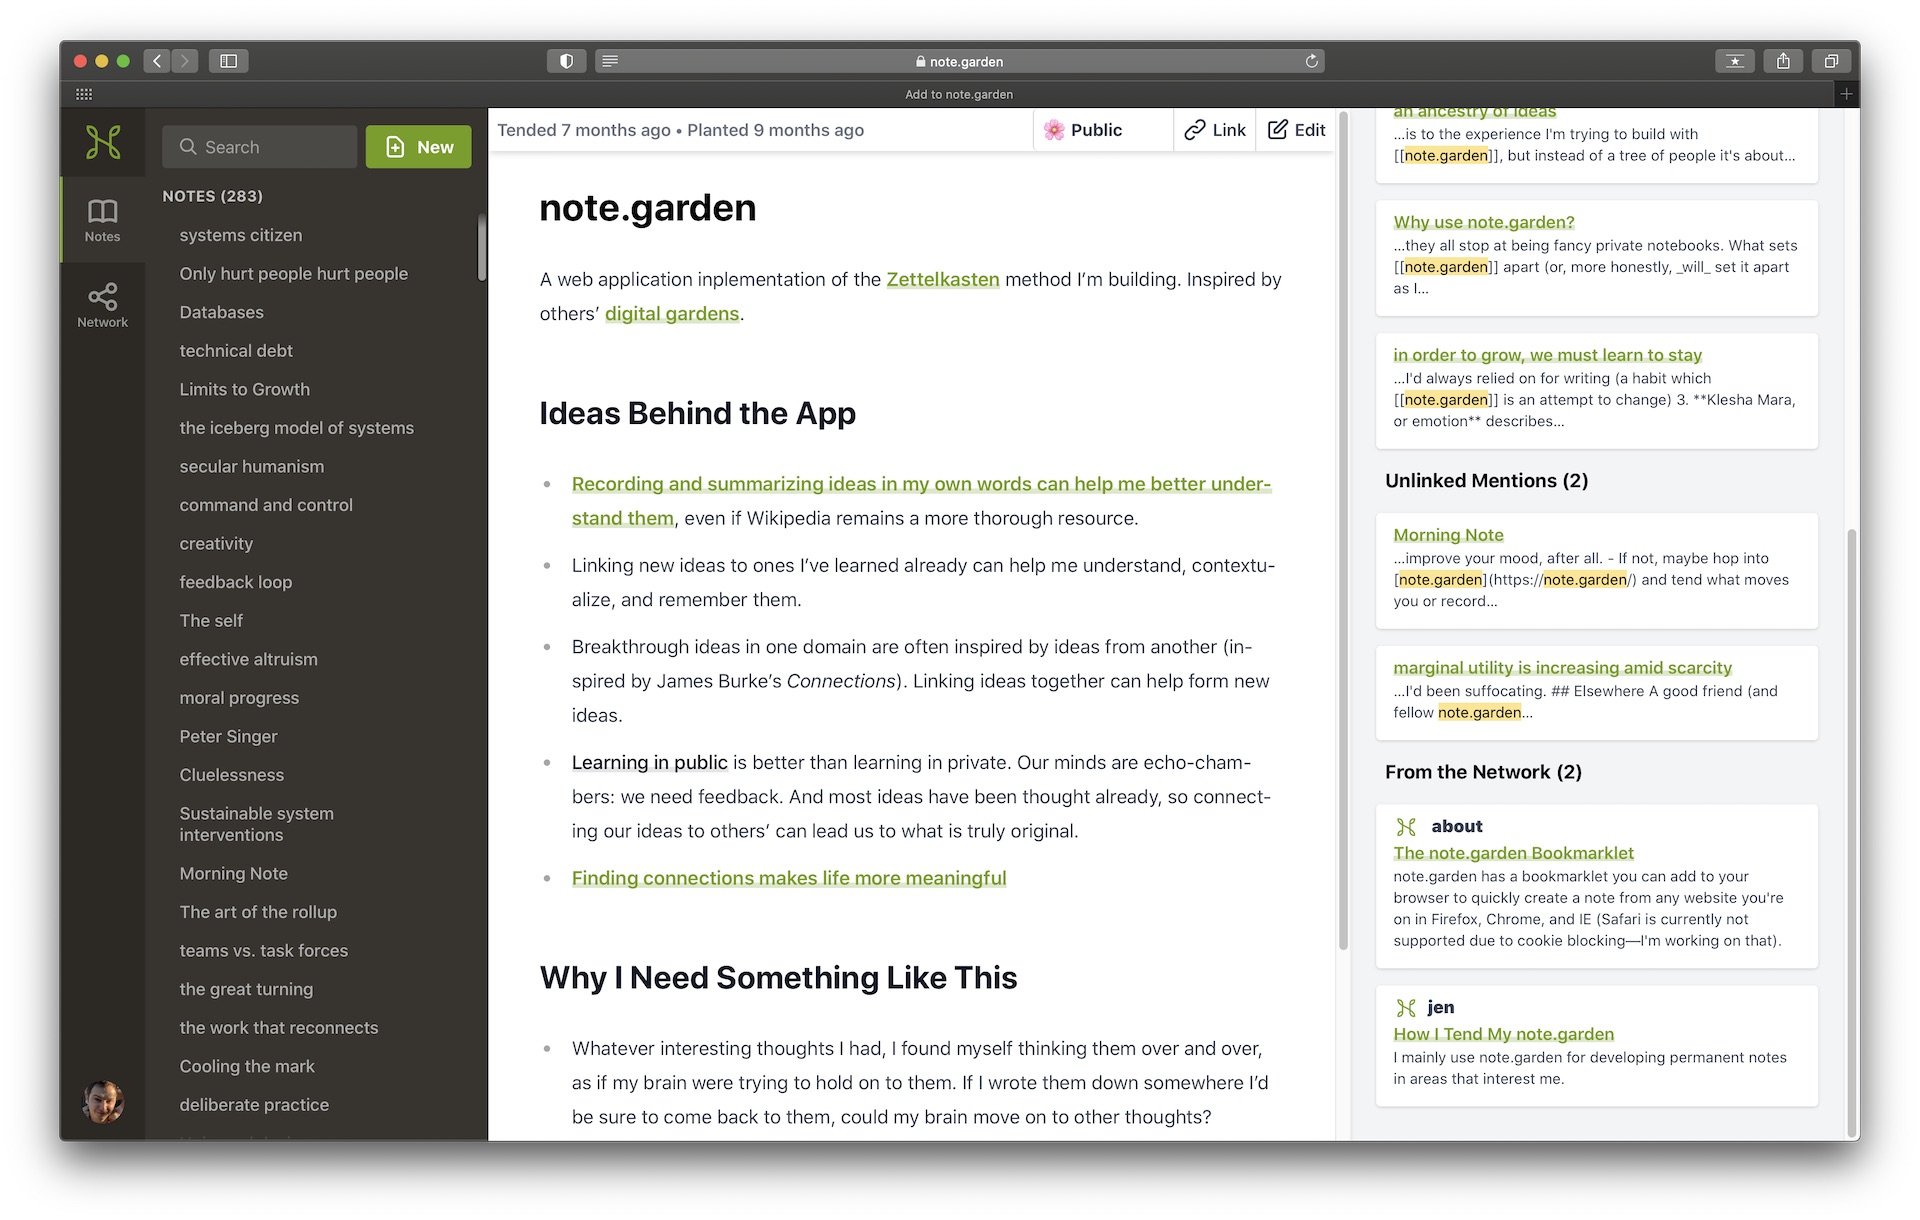 A screenshot of the note.garden app